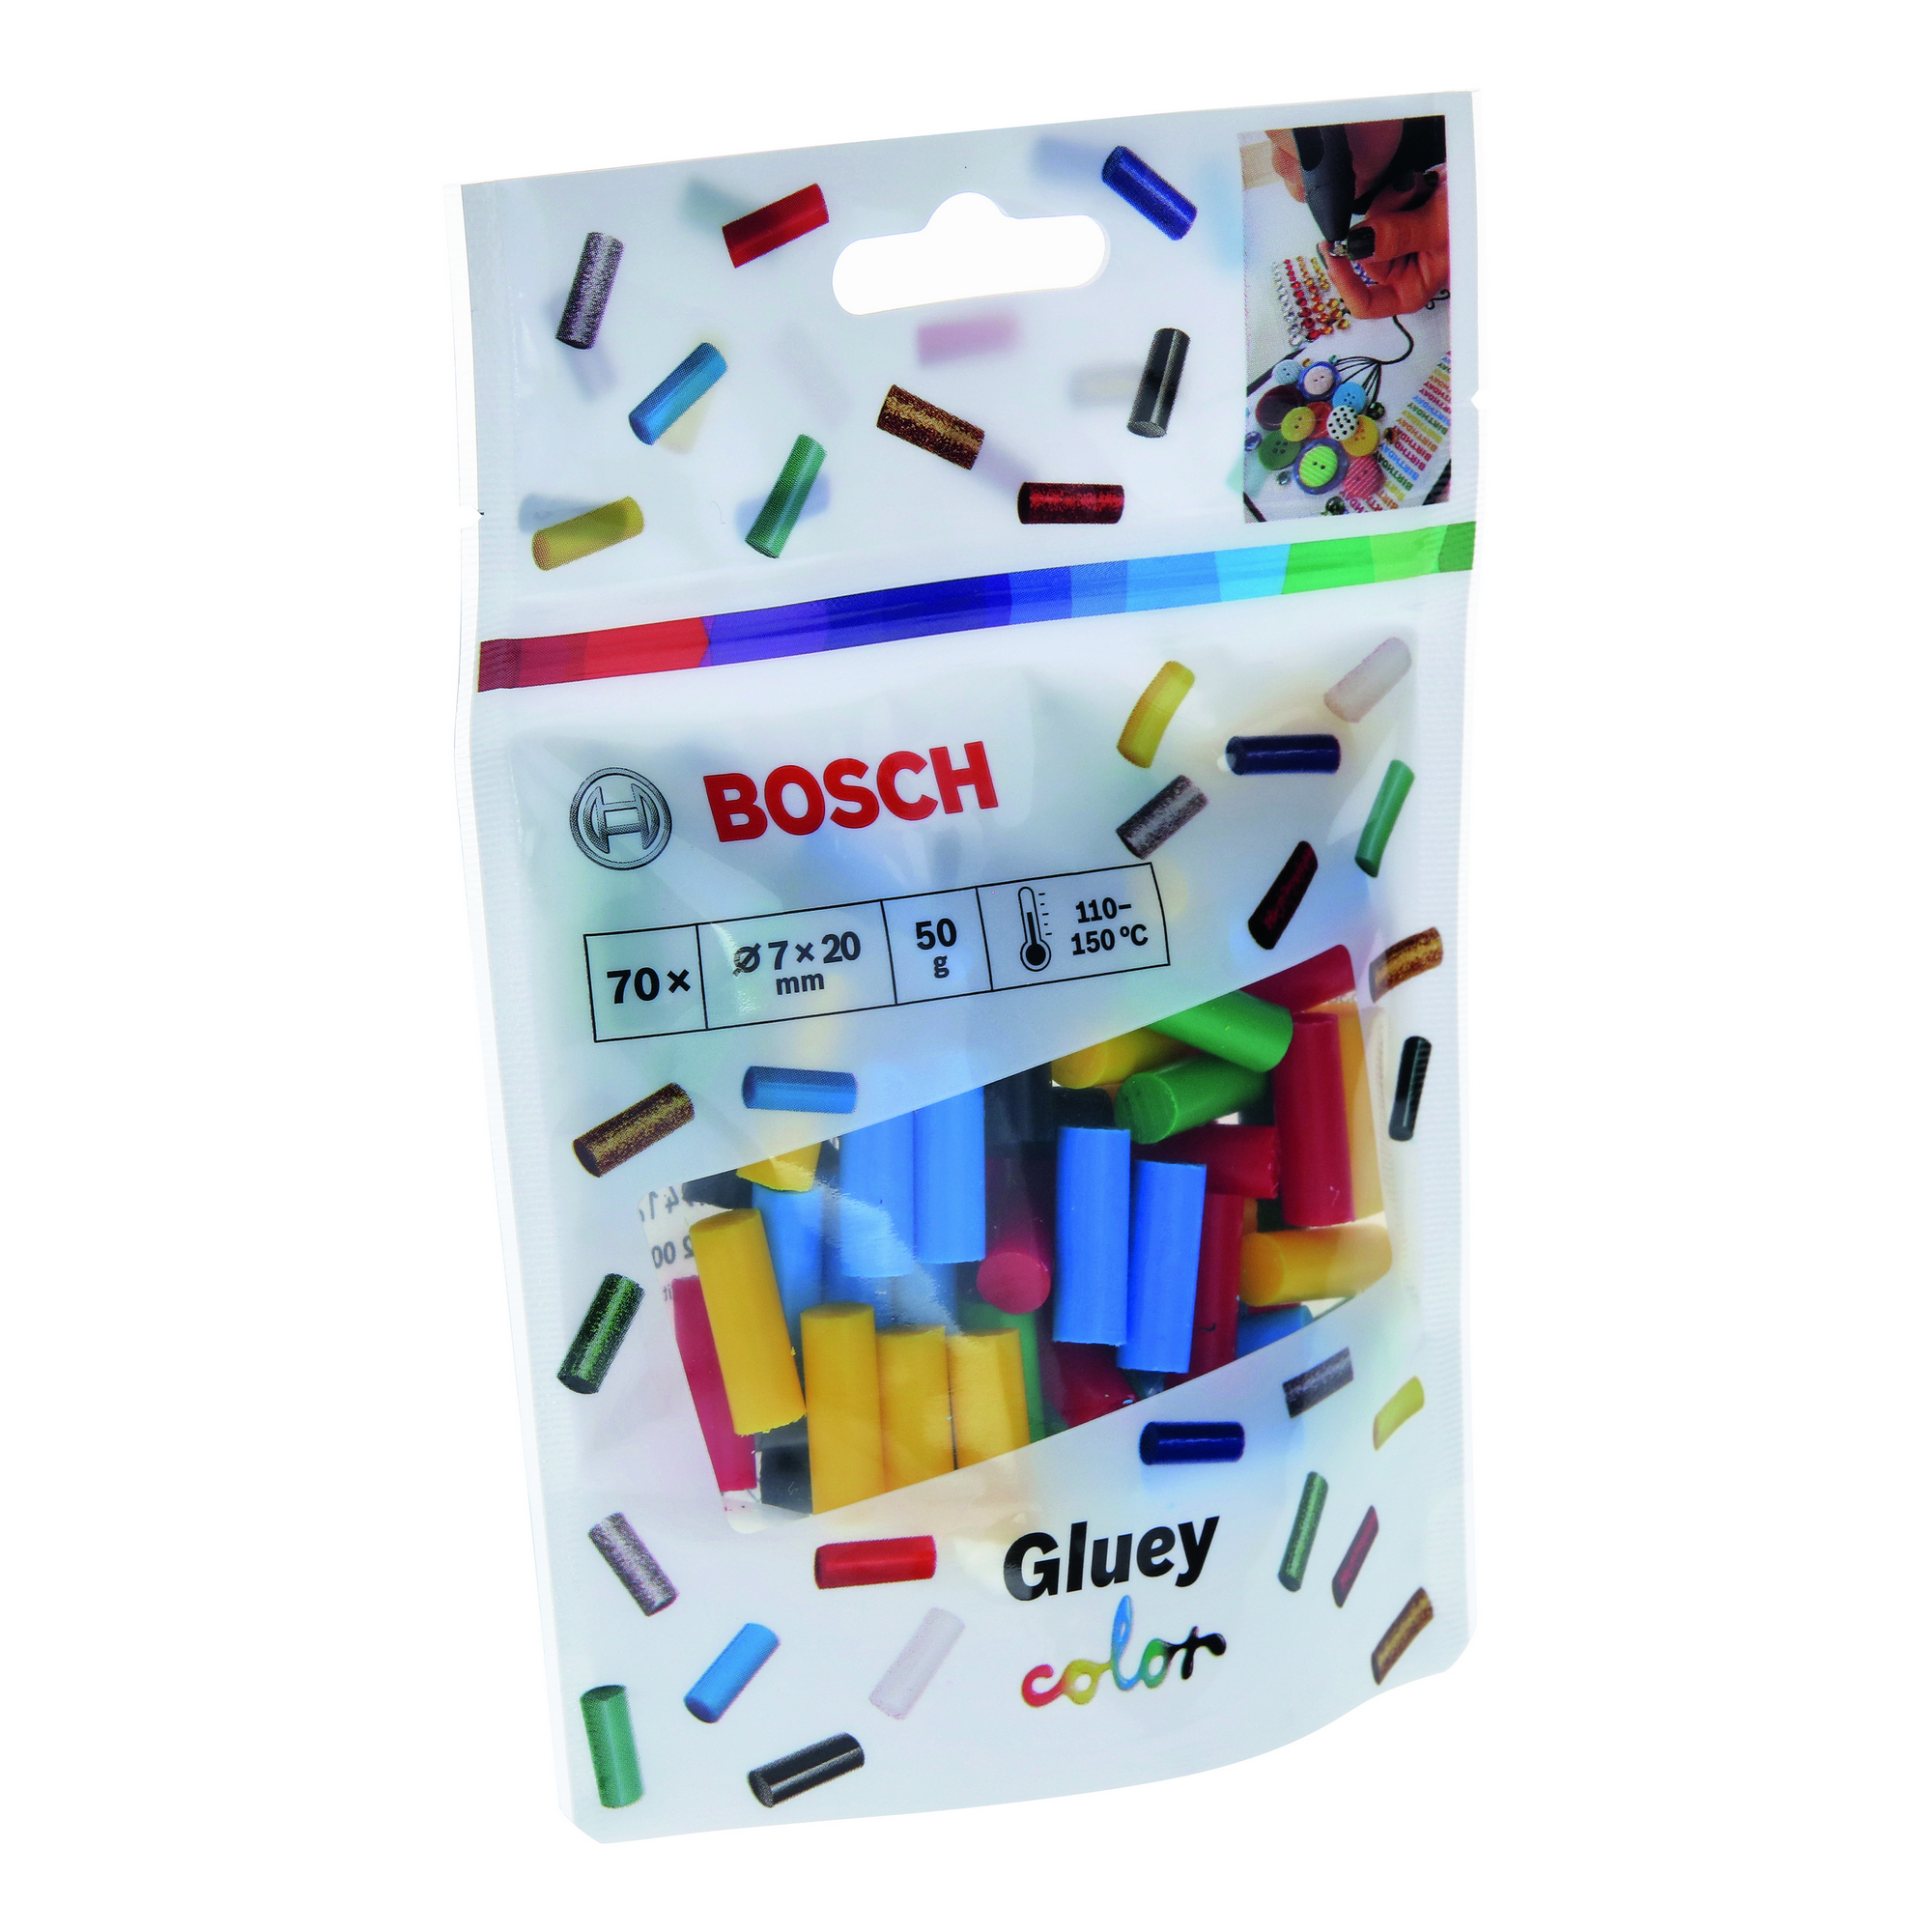 Heißklebesticks 'Gluey Color' 70 Stück + product picture